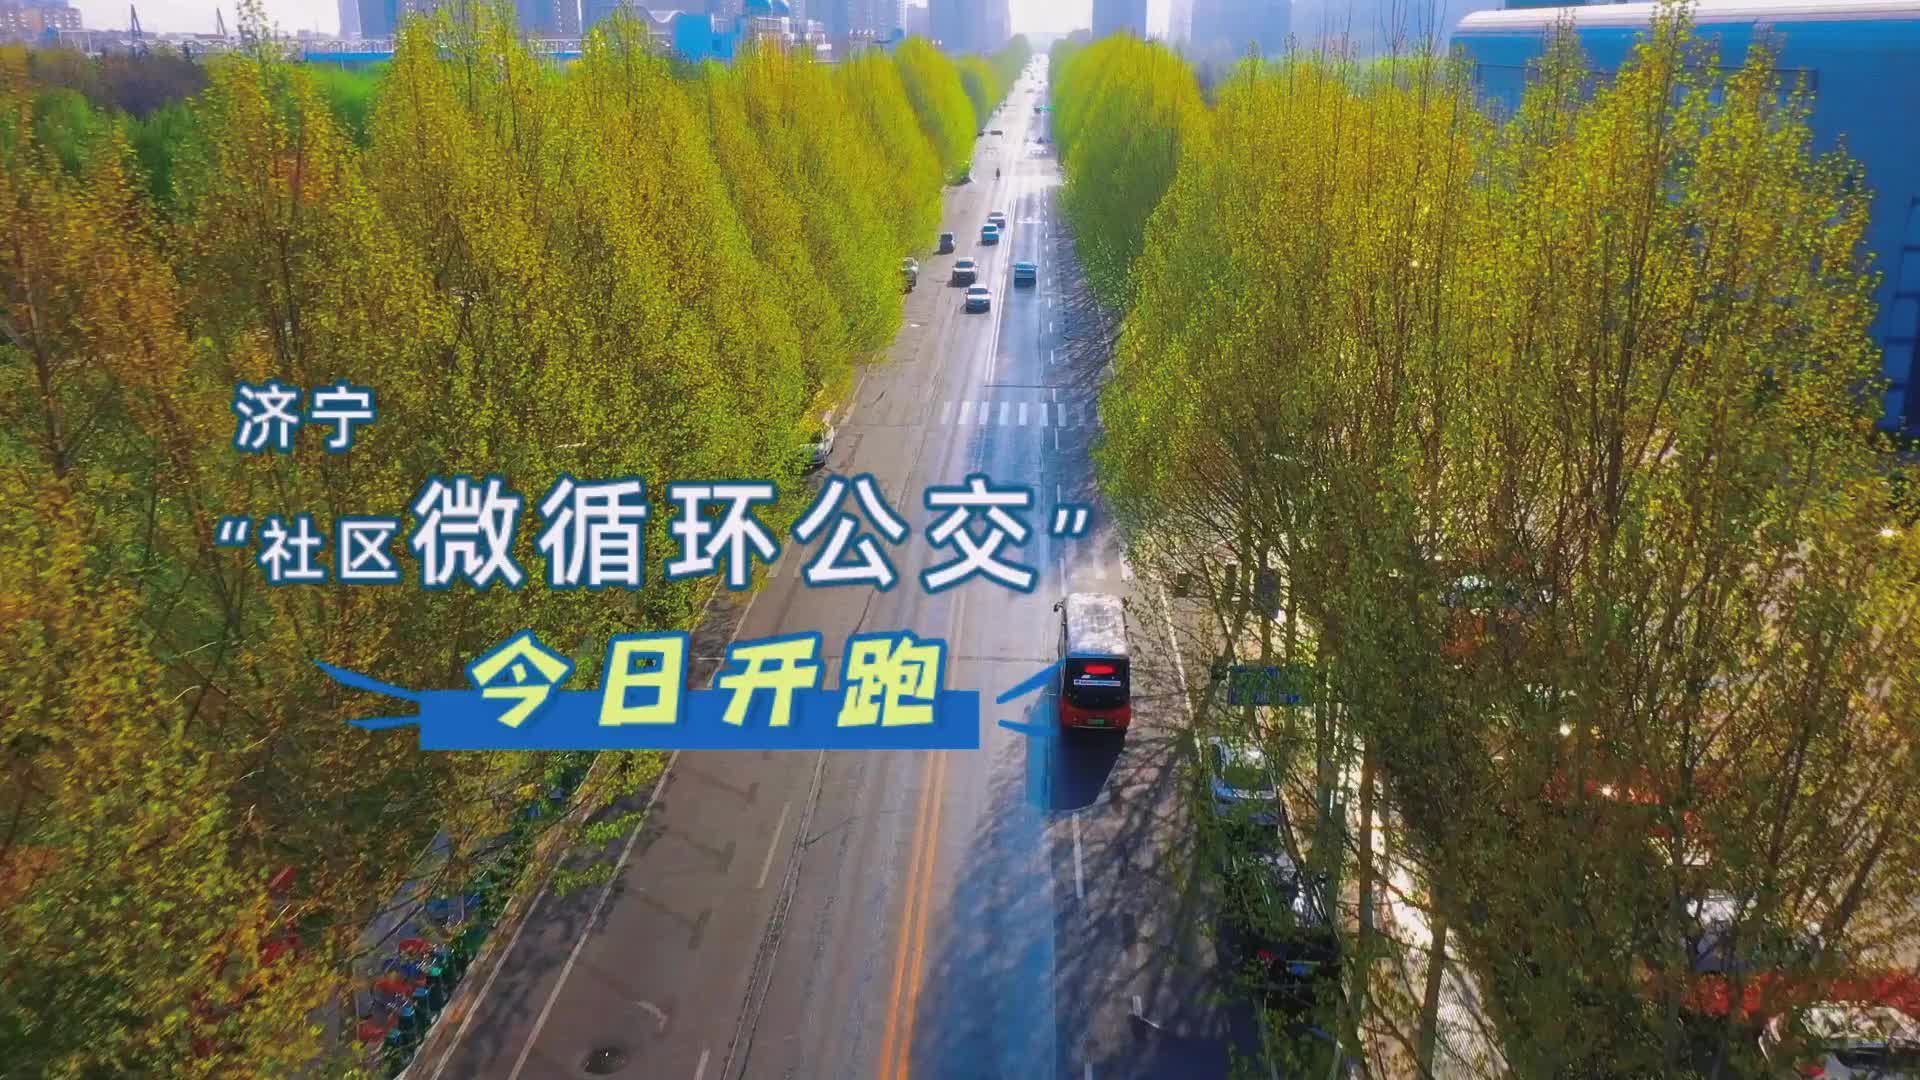 更济宁 | 济宁“社区微循环公交”今日开跑